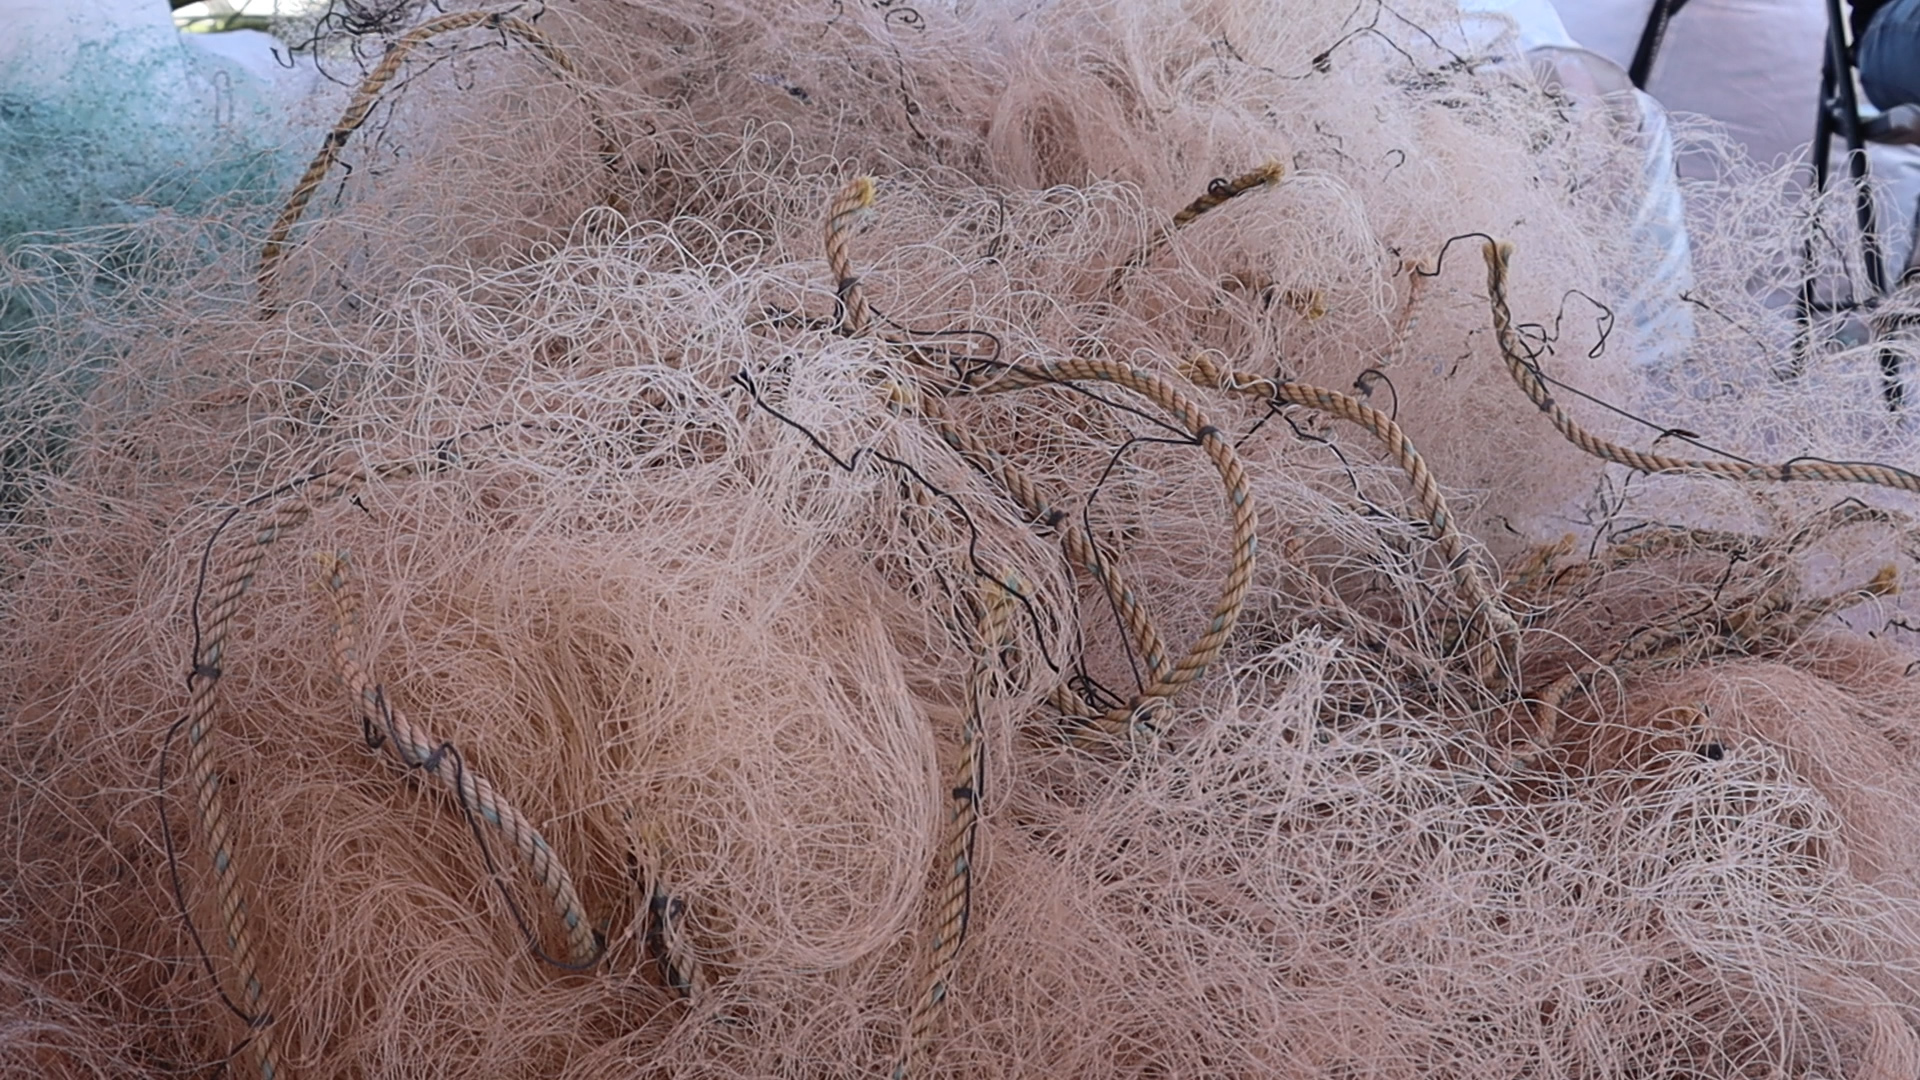 Red camaronera utilizada en el puerto de San Felipe, esta es una de las redes más comunes y con la que especies marinas quedan atoradas en la pesca incidental. Crédito: Luis Madrid / Animal Político.
